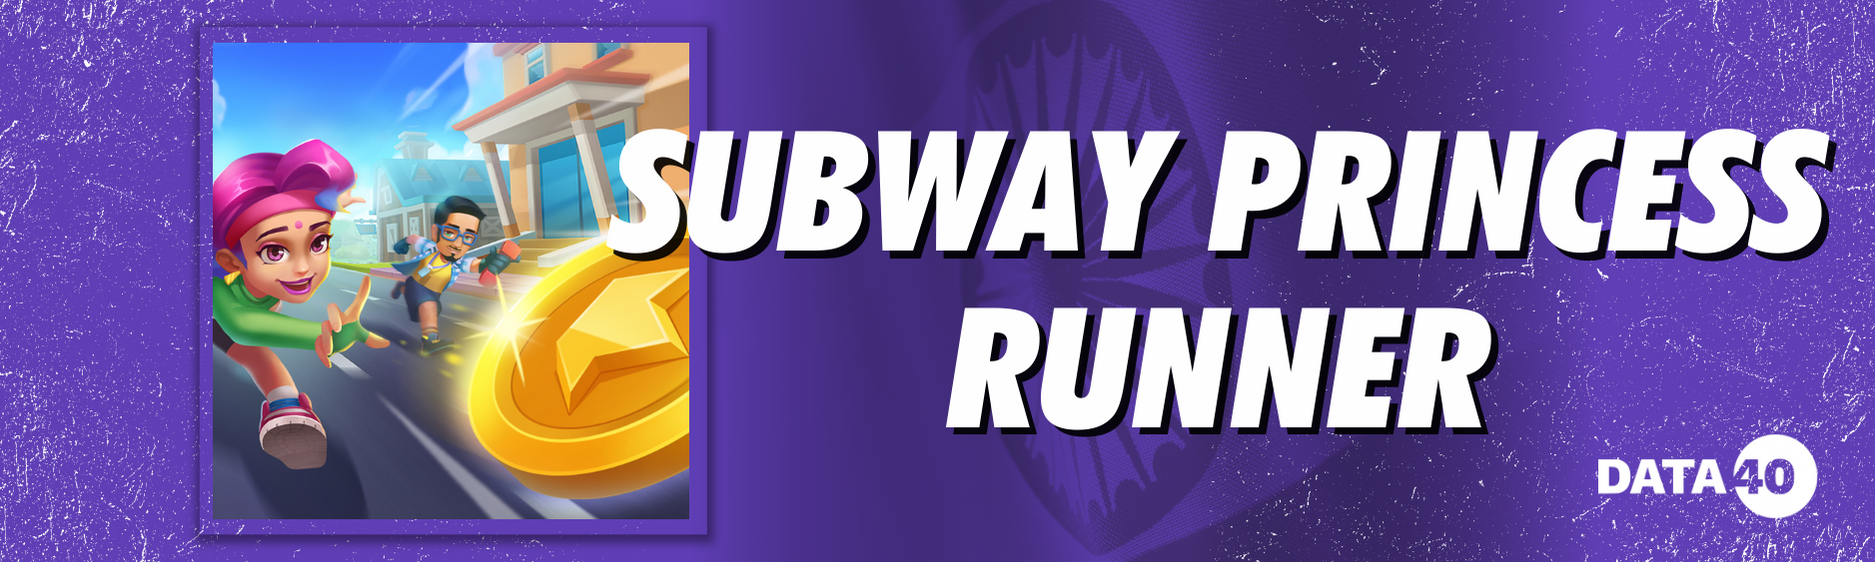 Subway Princess Runner
